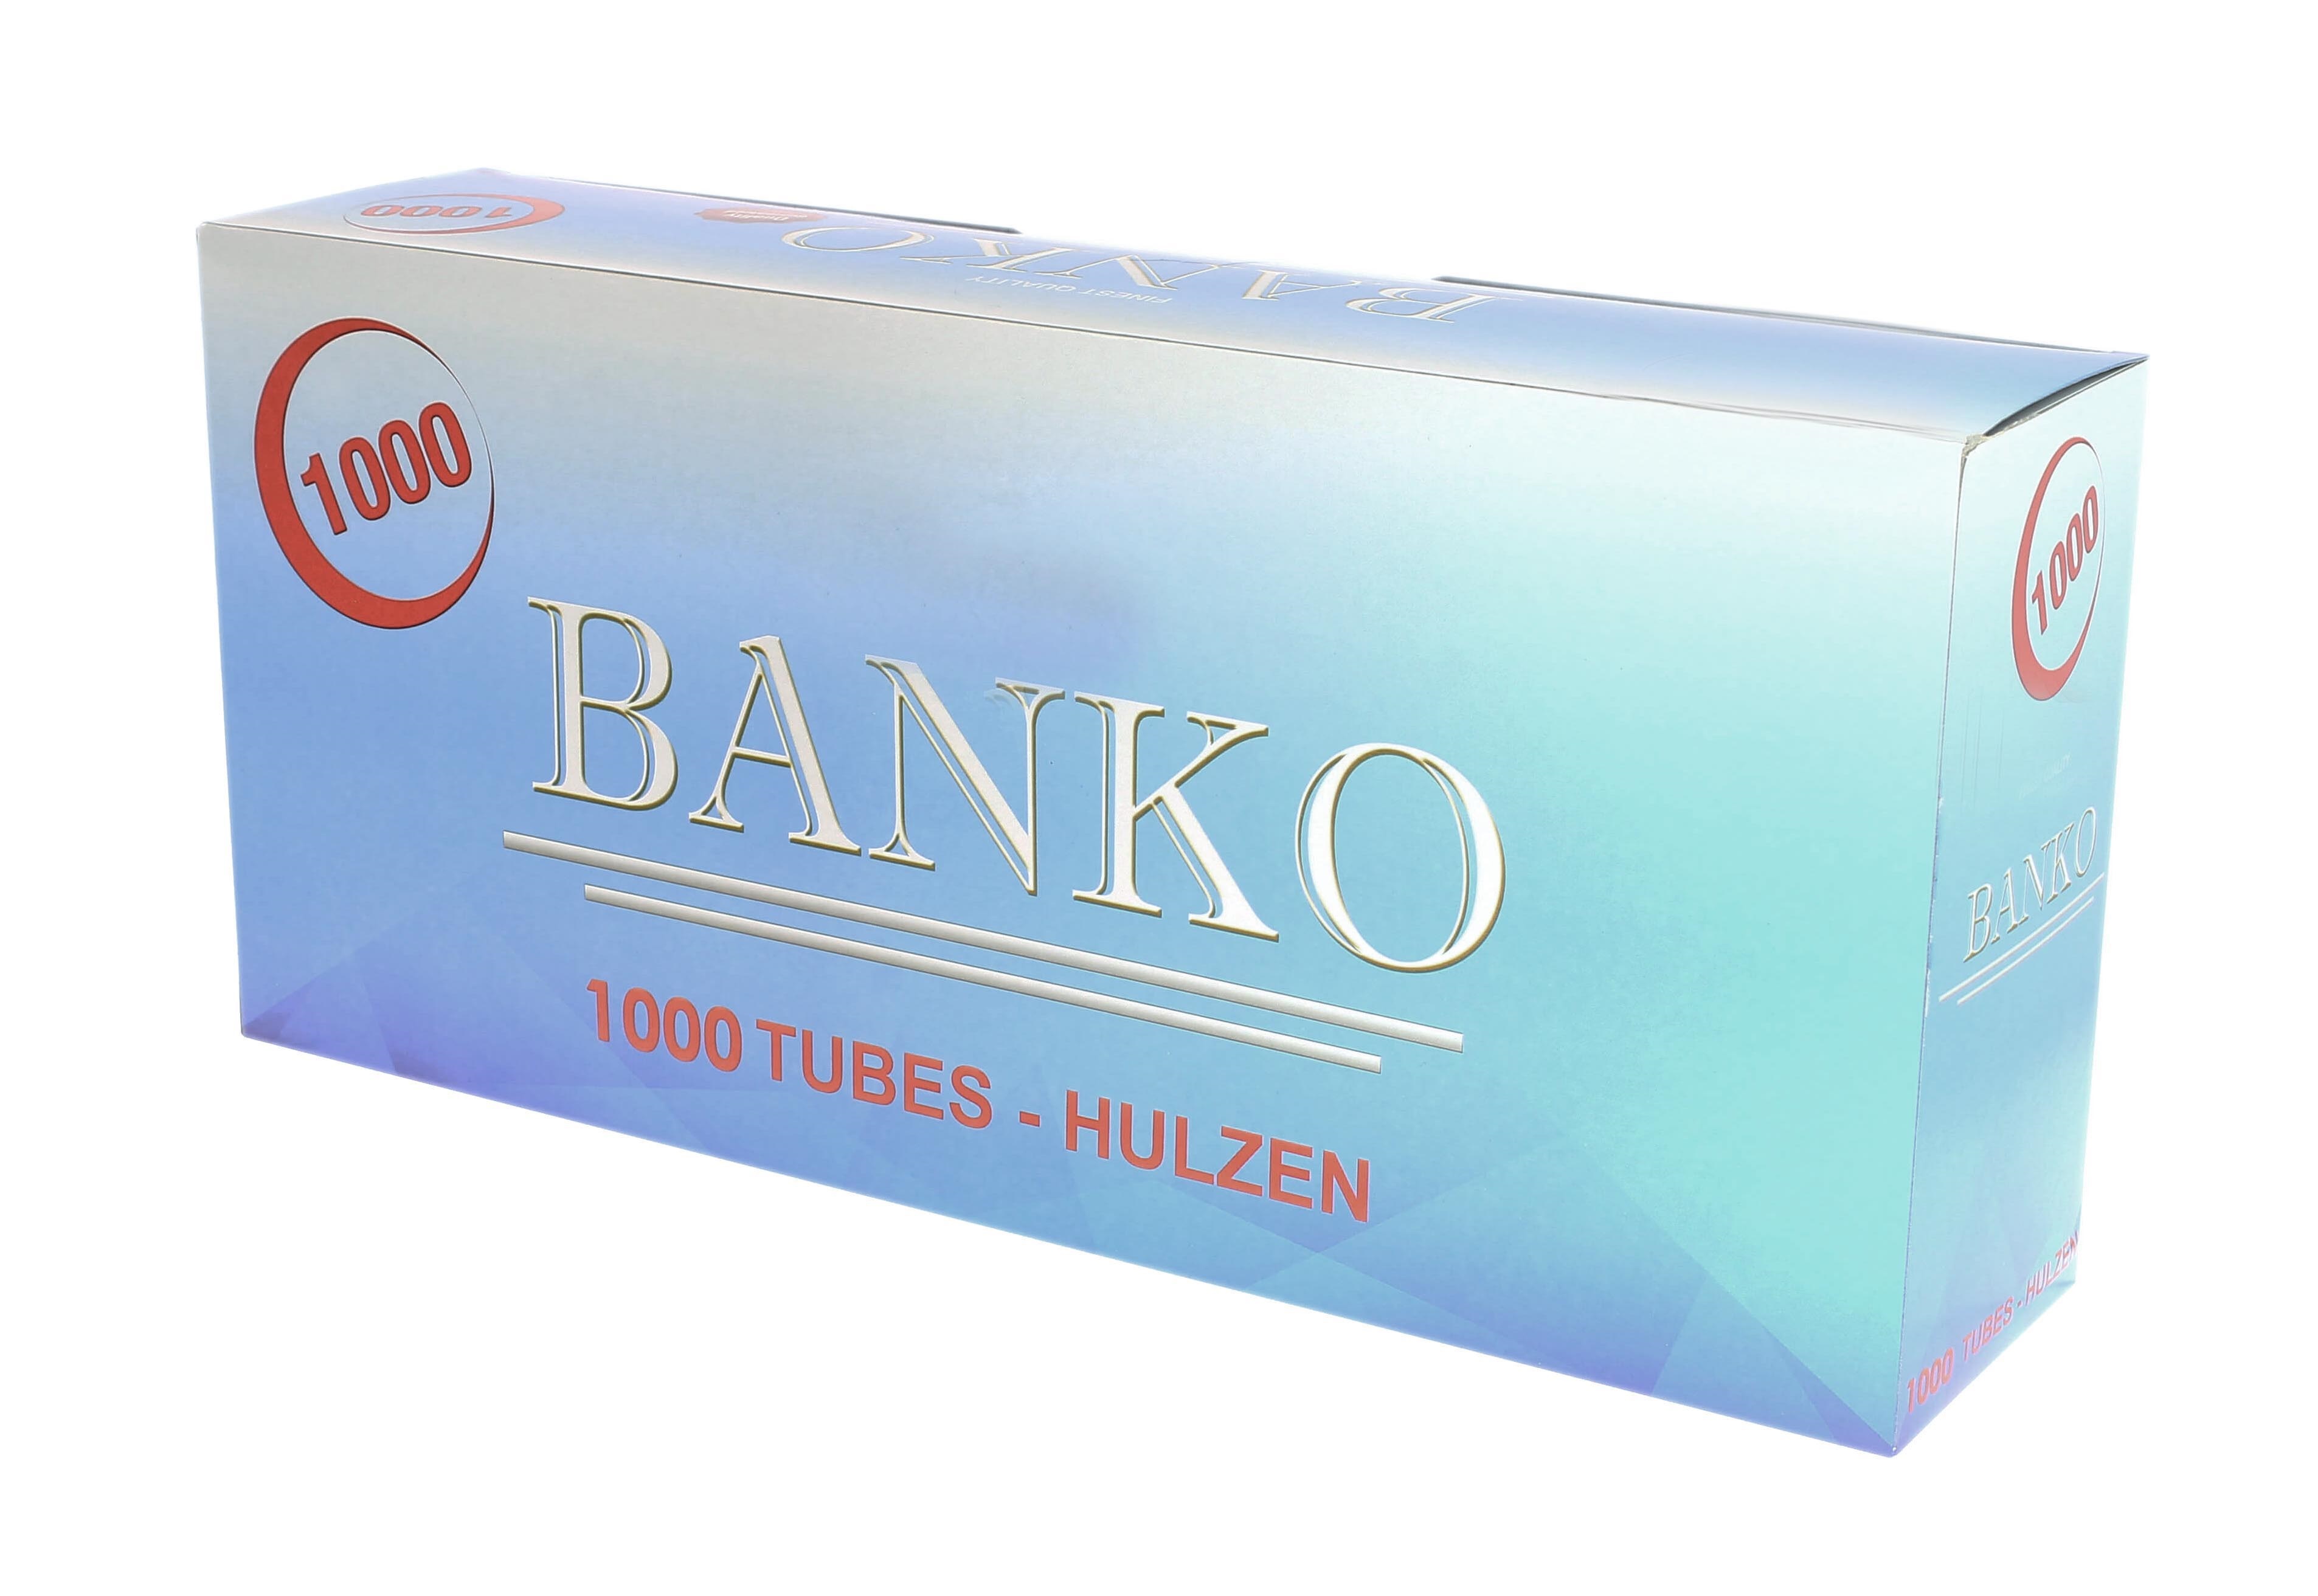 BANKO tubes 1000